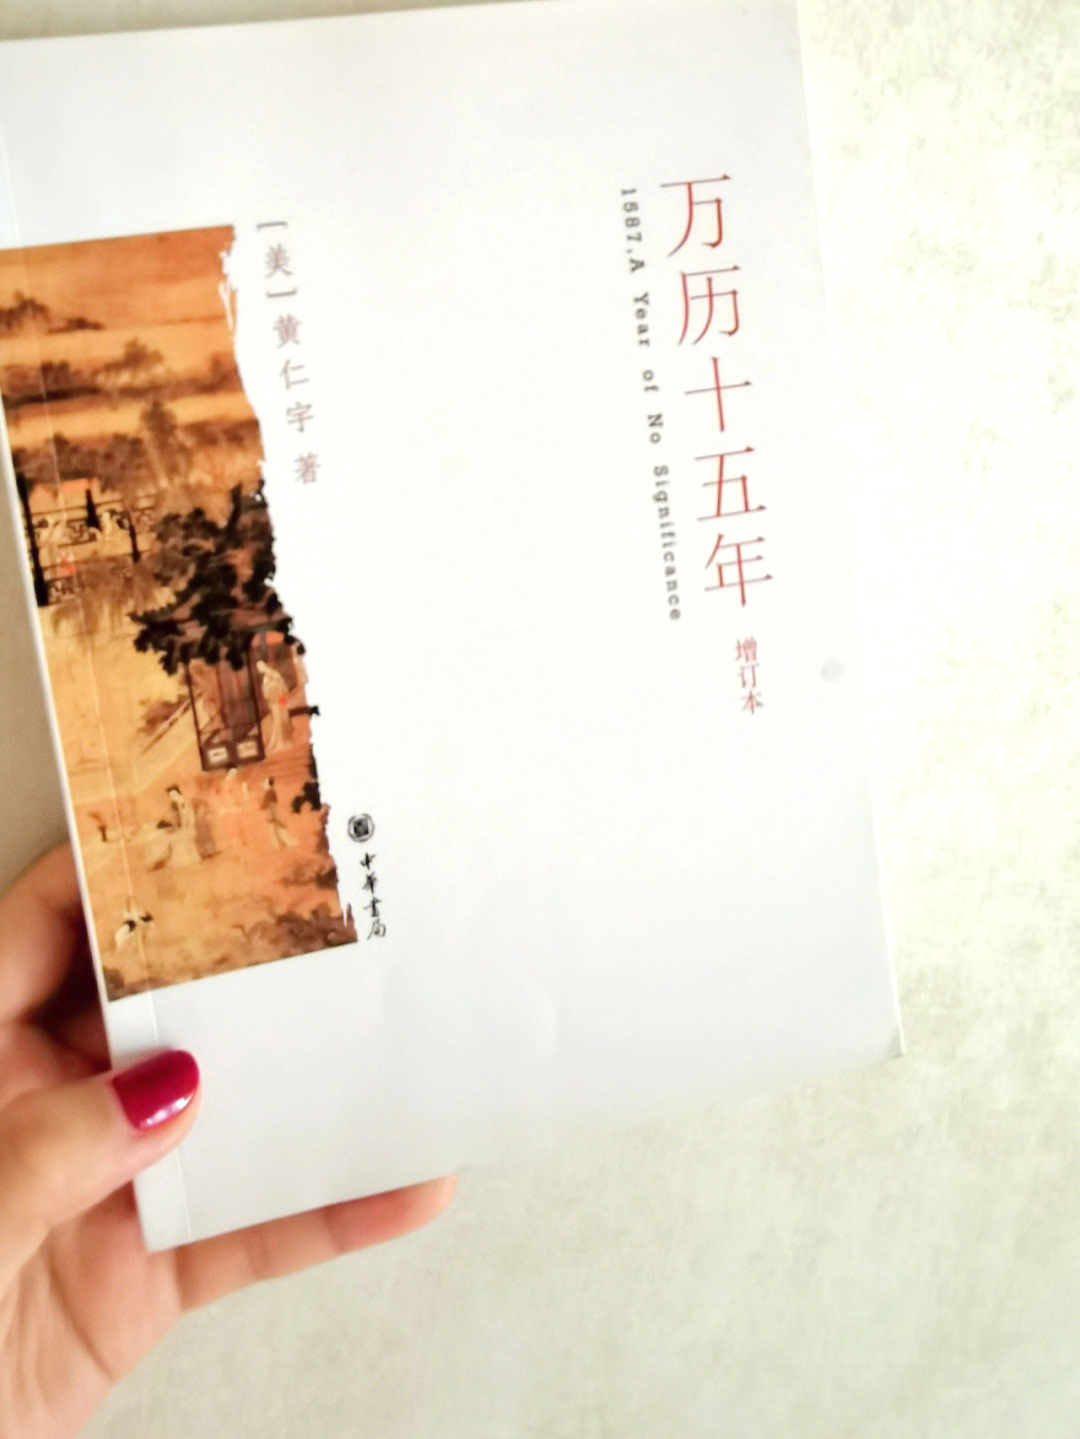 我们先看下几位名人的评价:96中国当代学者王小波:我说《万历十五年